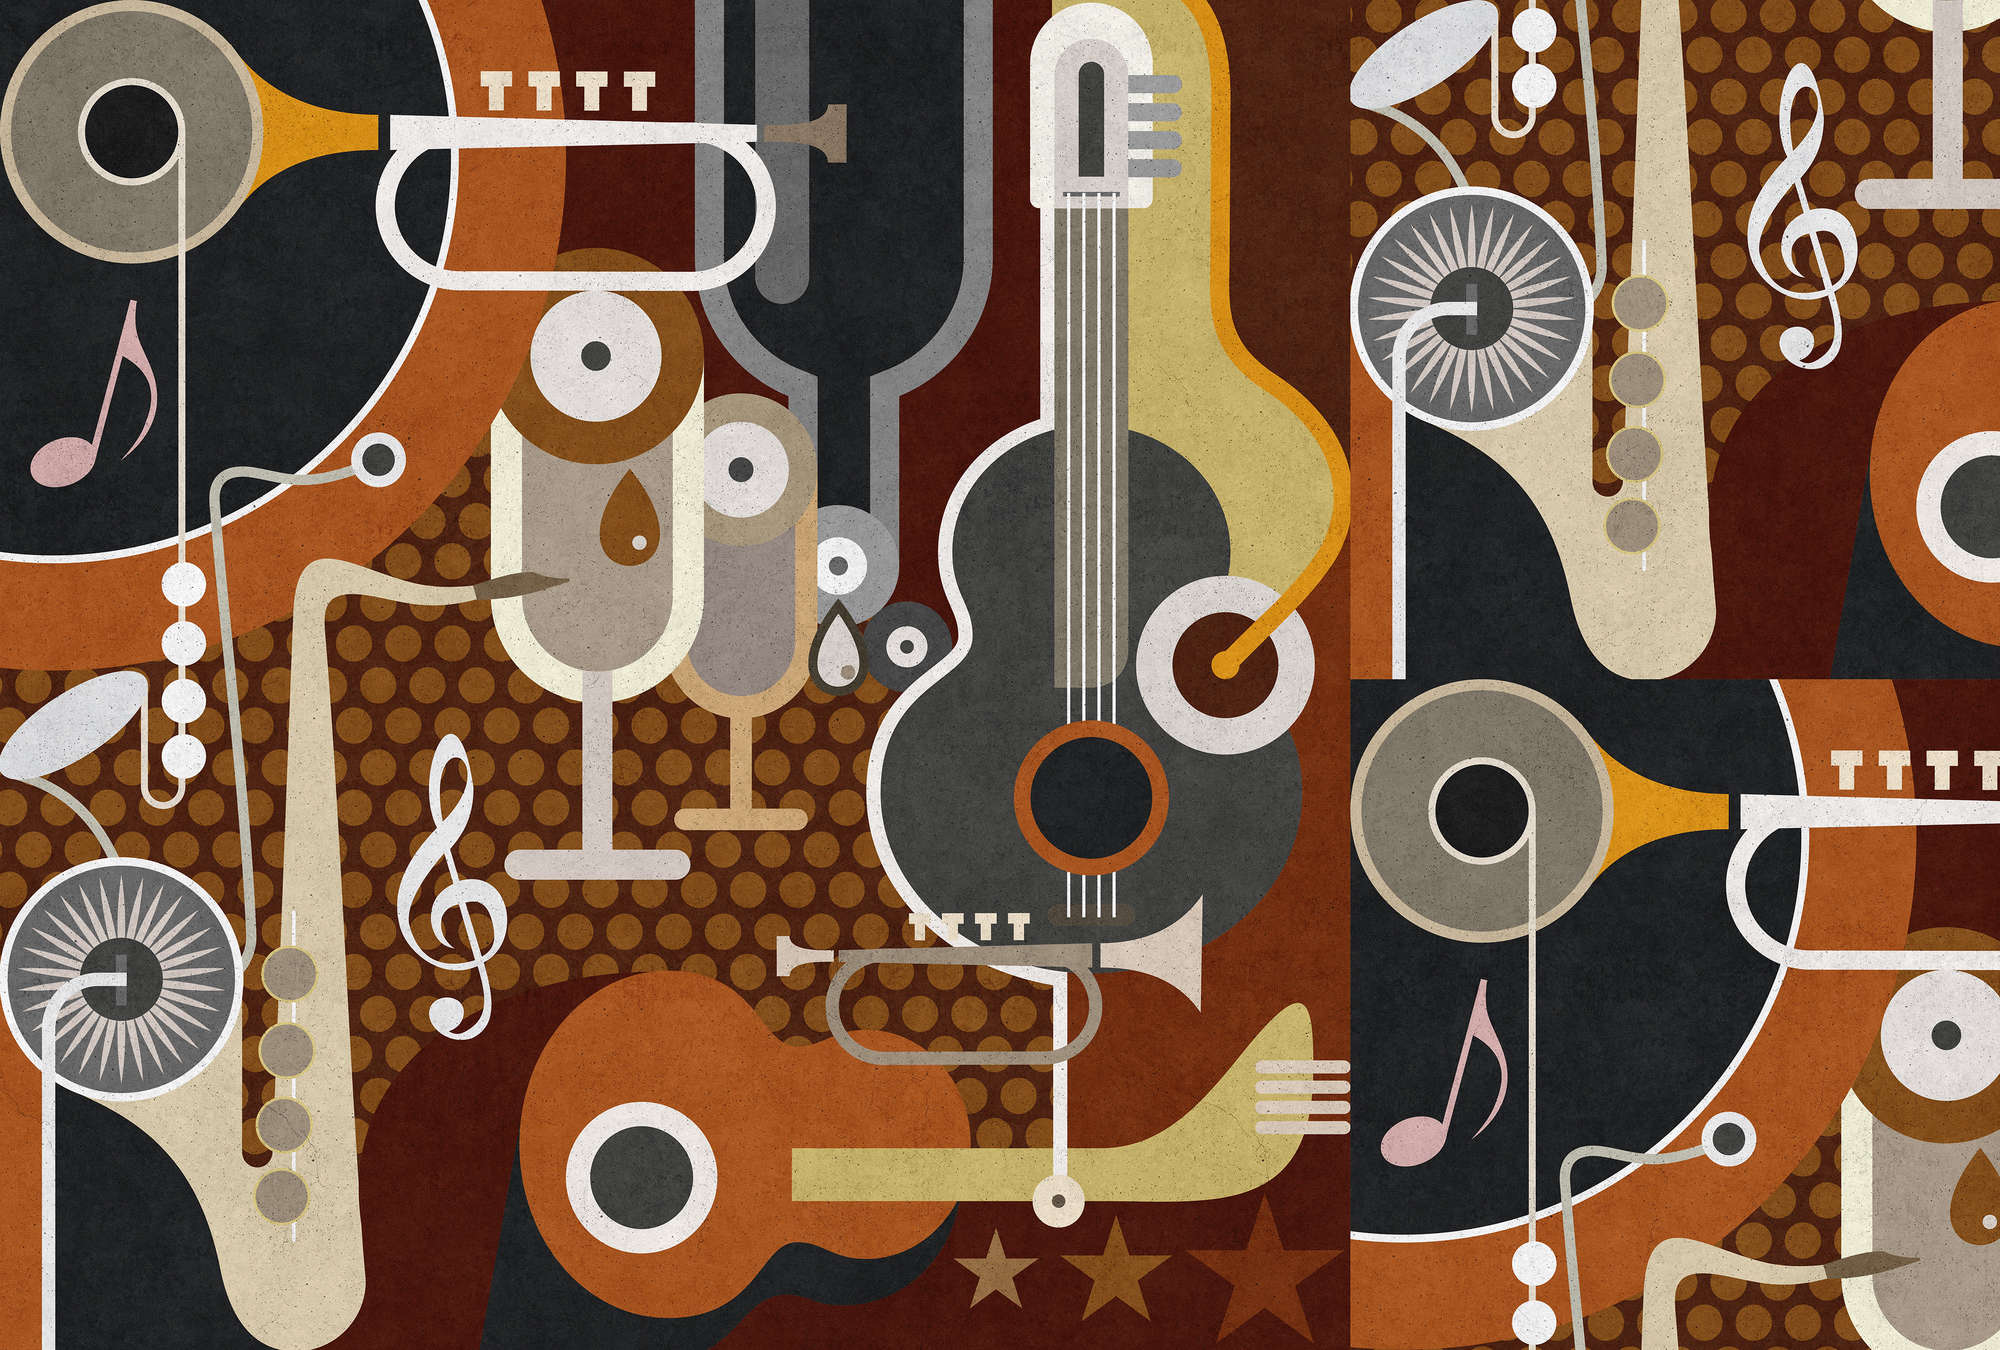             Wall of sound 1 - Papier peint texture béton, instruments de musique abstraits - beige, marron | Premium intissé lisse
        